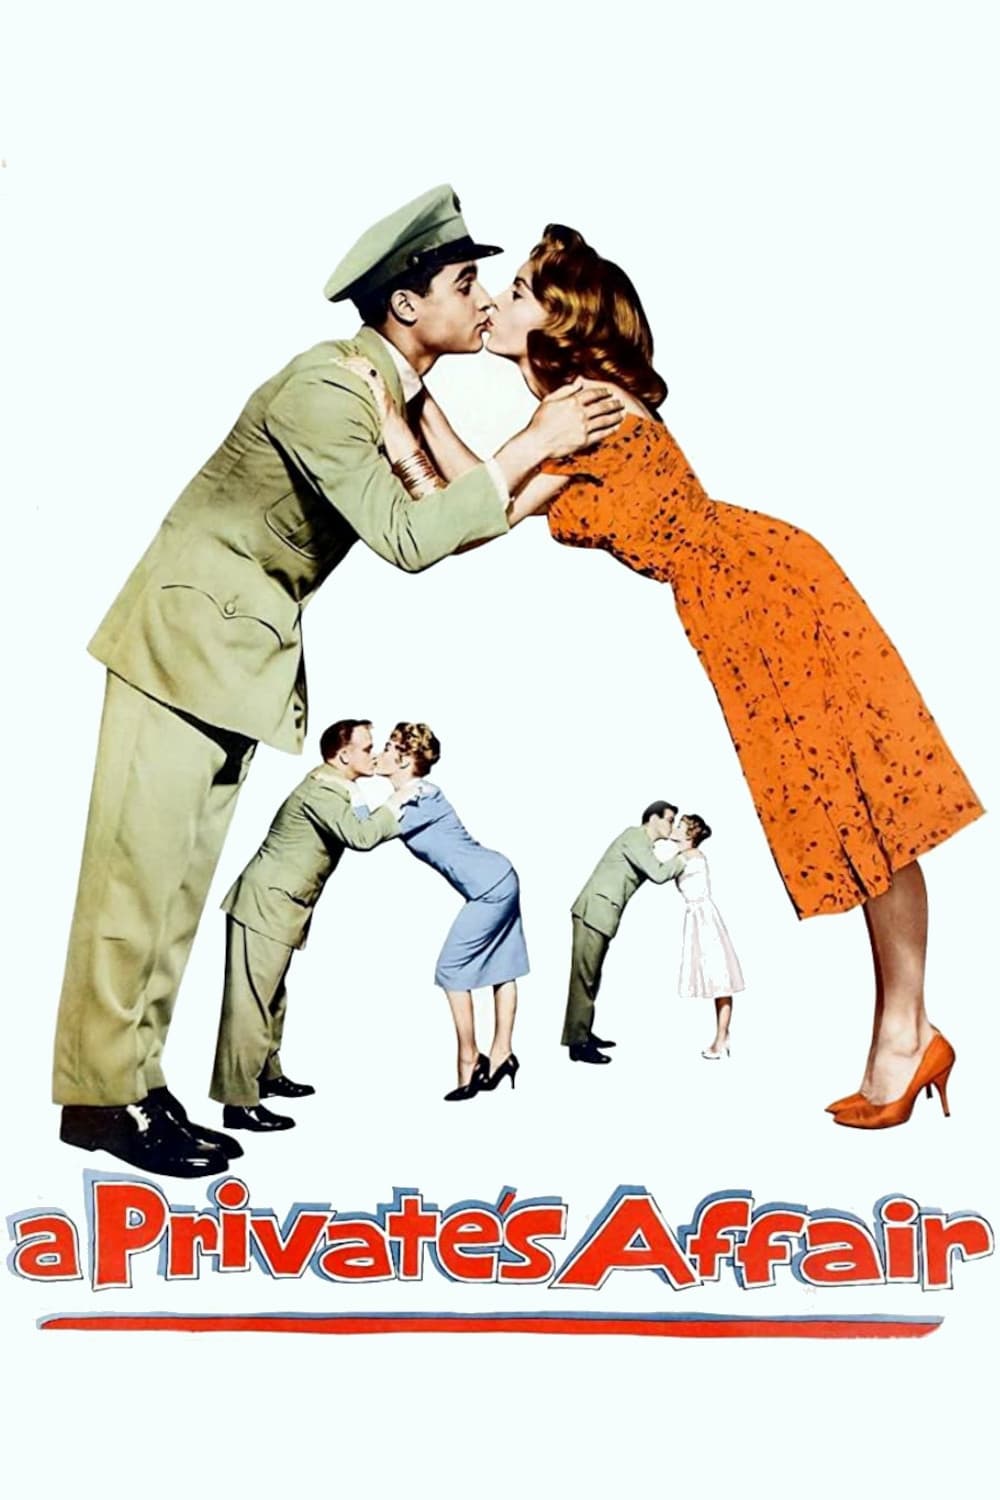 A Private's Affair (1959)